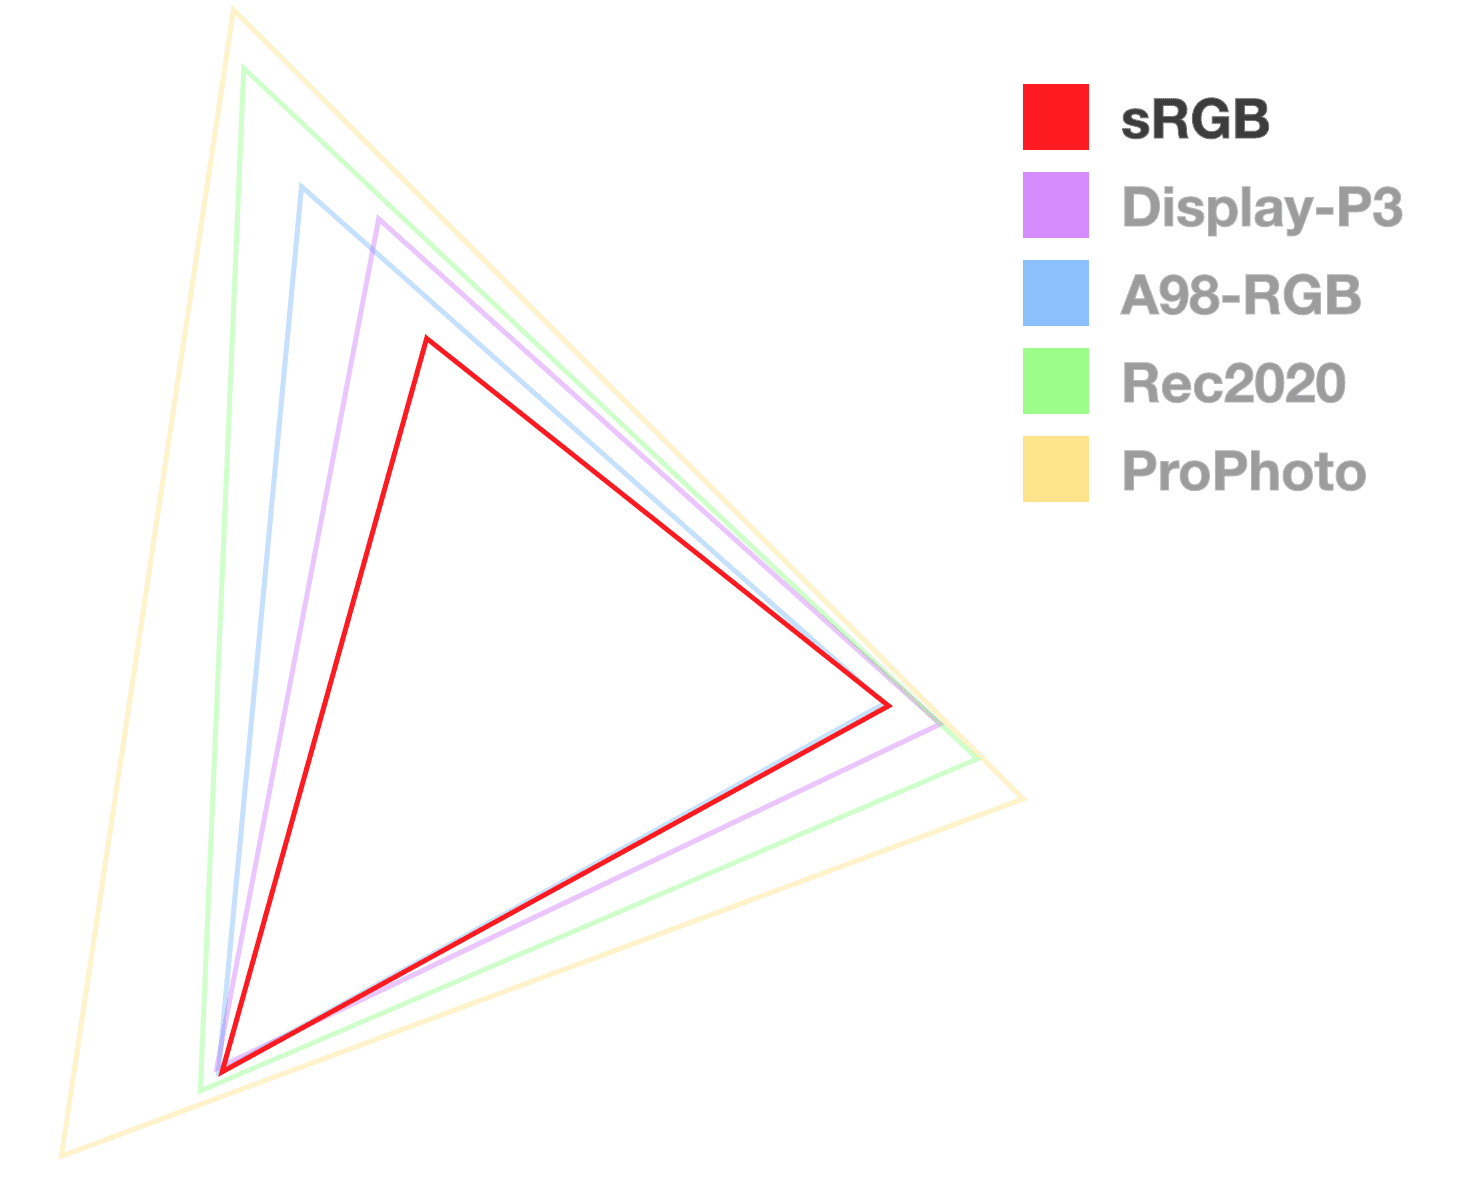 Треугольник sRGB — единственный полностью непрозрачный, что помогает визуализировать размер гаммы.